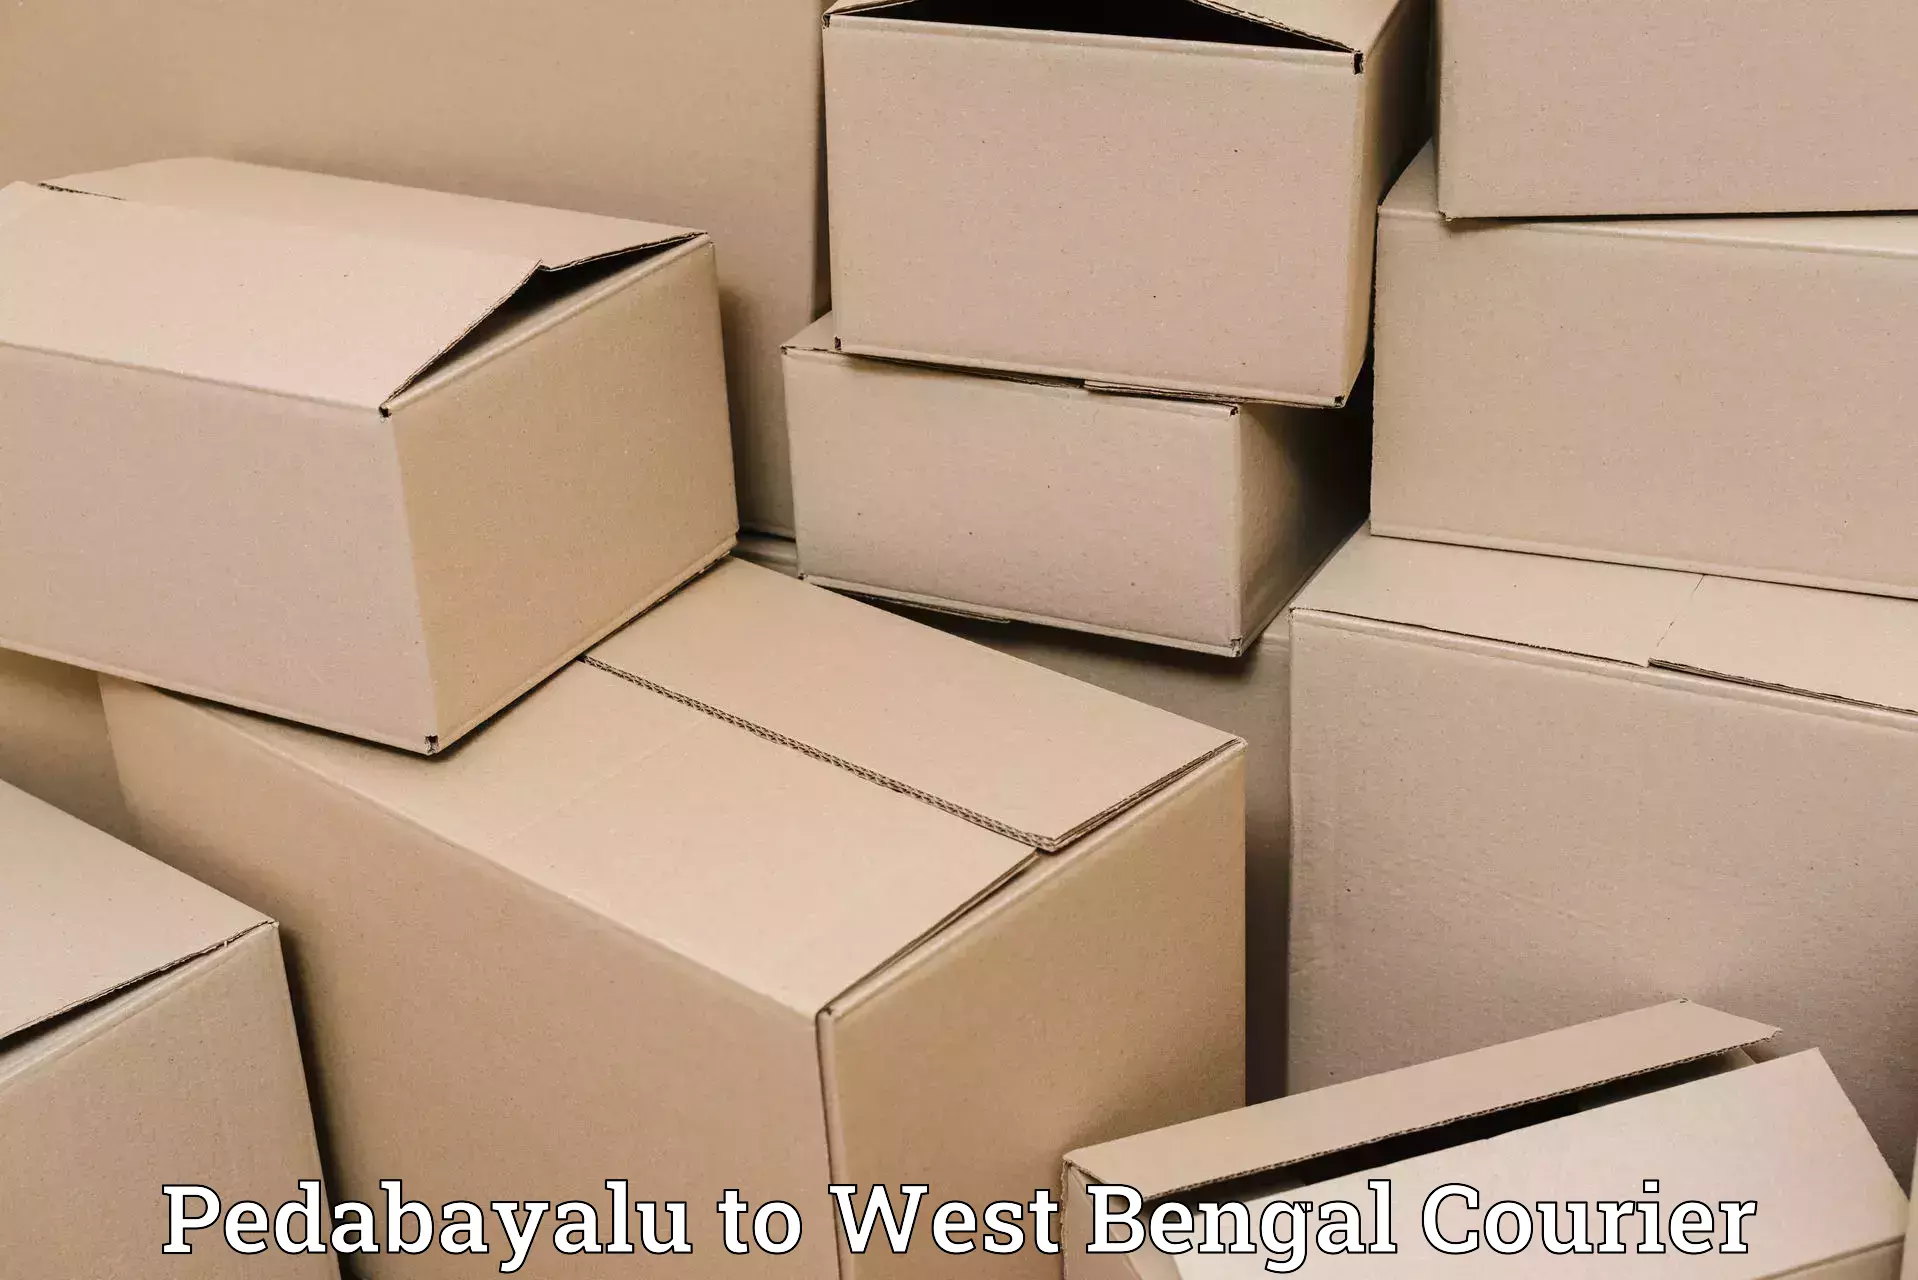 Nationwide shipping capabilities Pedabayalu to Maheshtala